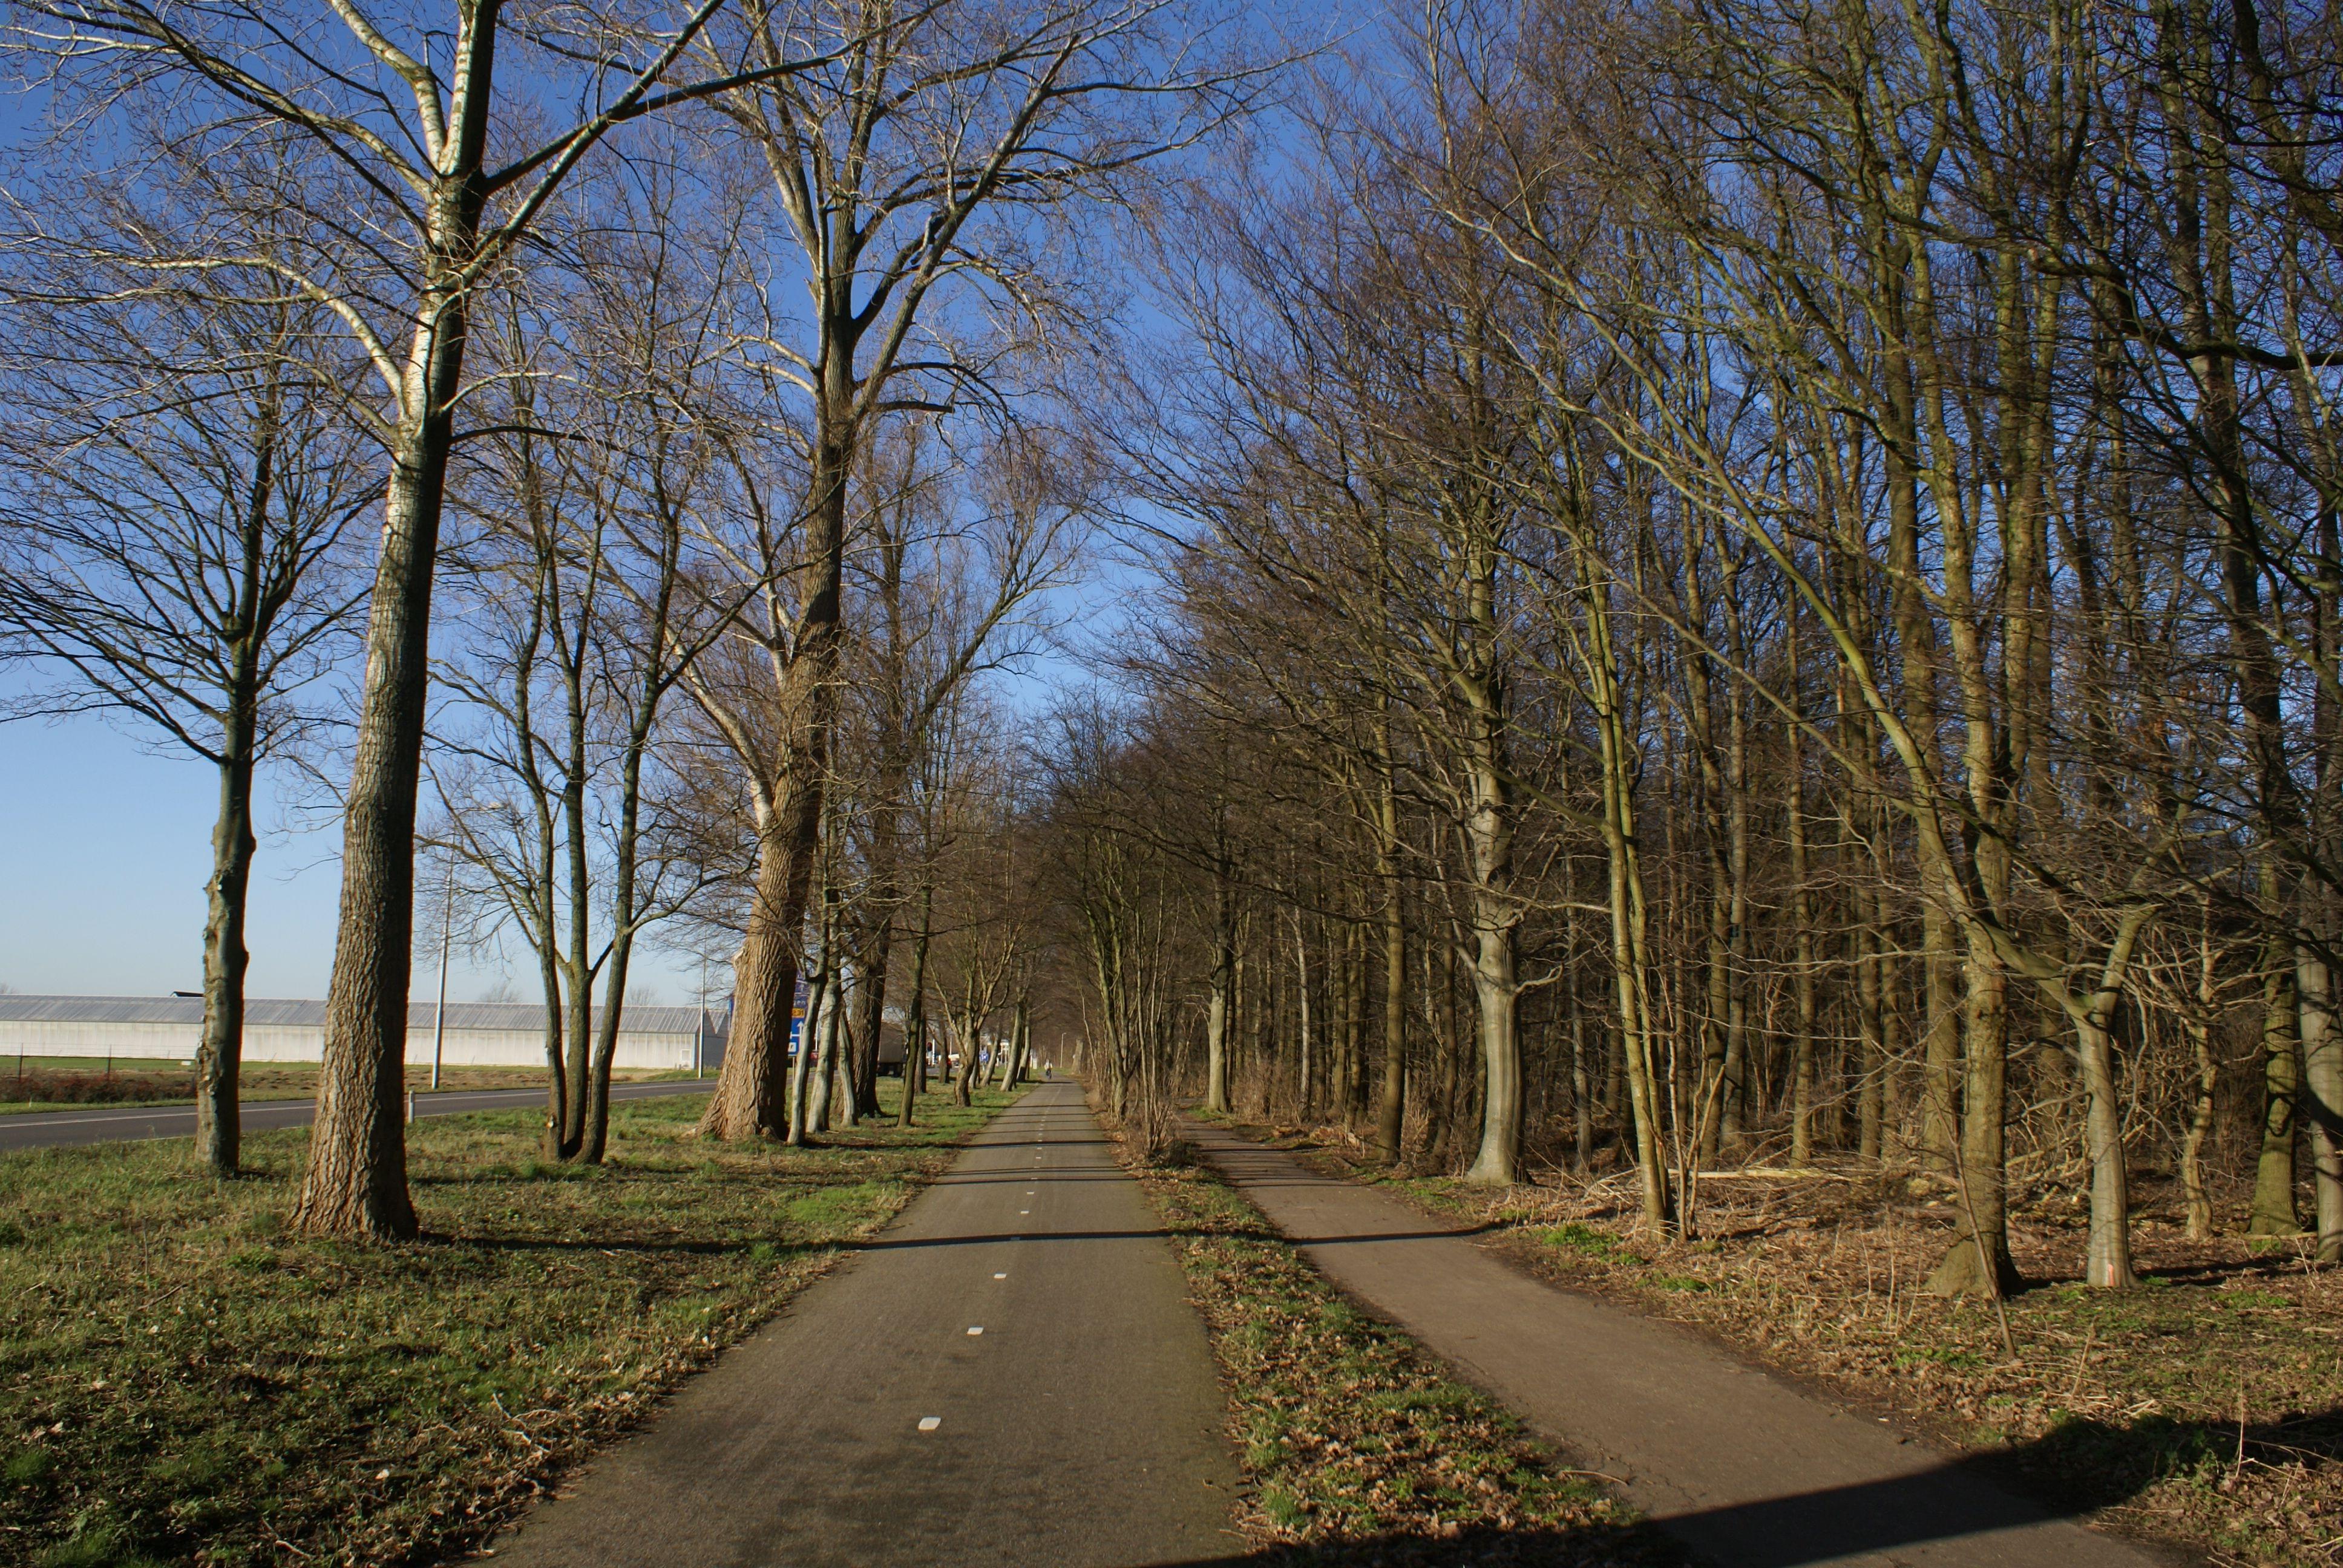 Het Amsterdamse Bos